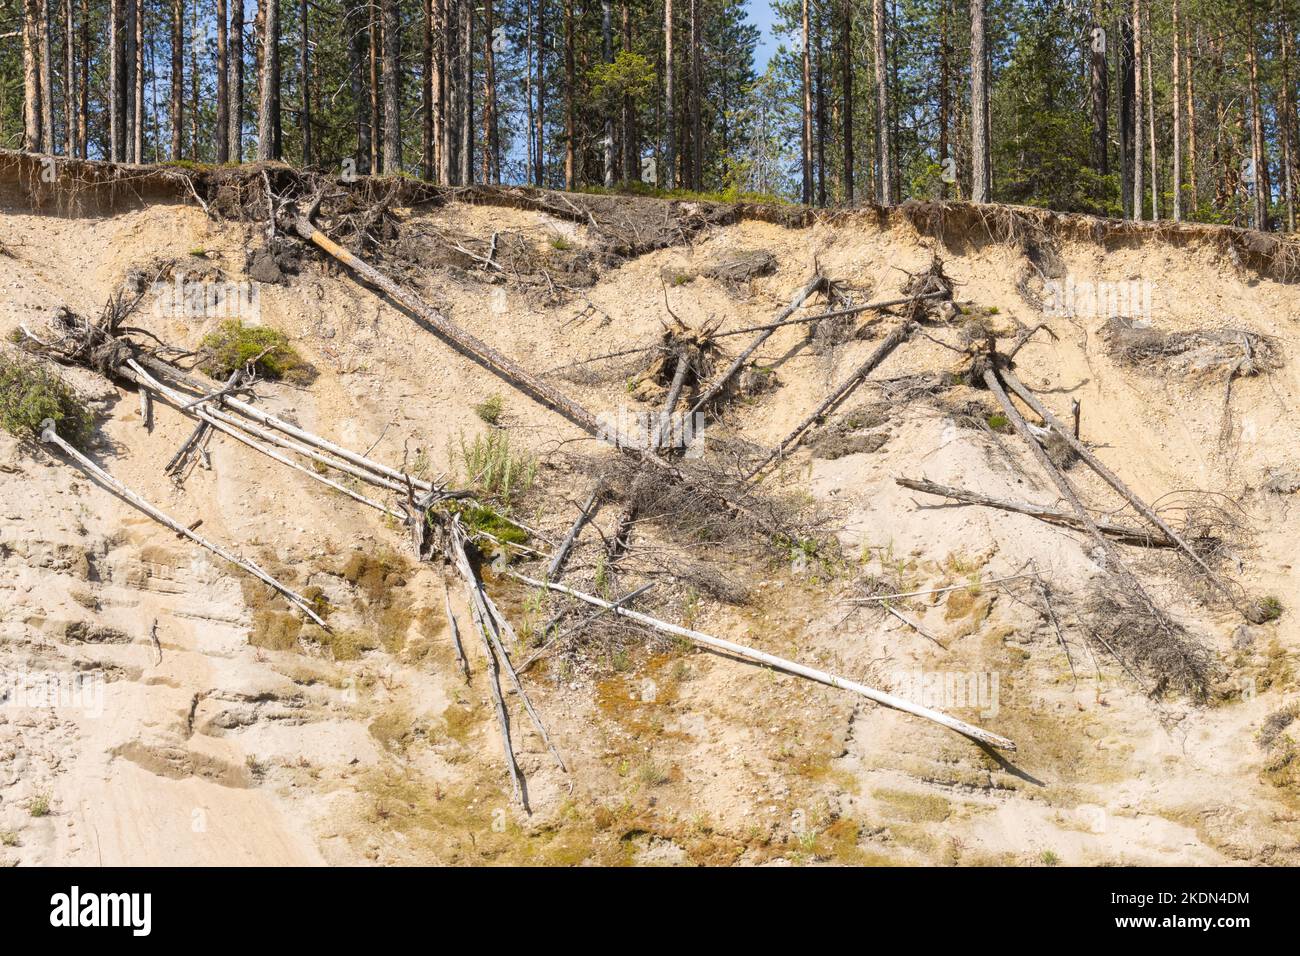 Die Erosion der Erde an einem hohen Flussufer mit einigen Baumstämmen. Gedreht im Oulanka-Nationalpark, Nordfinnland. Stockfoto